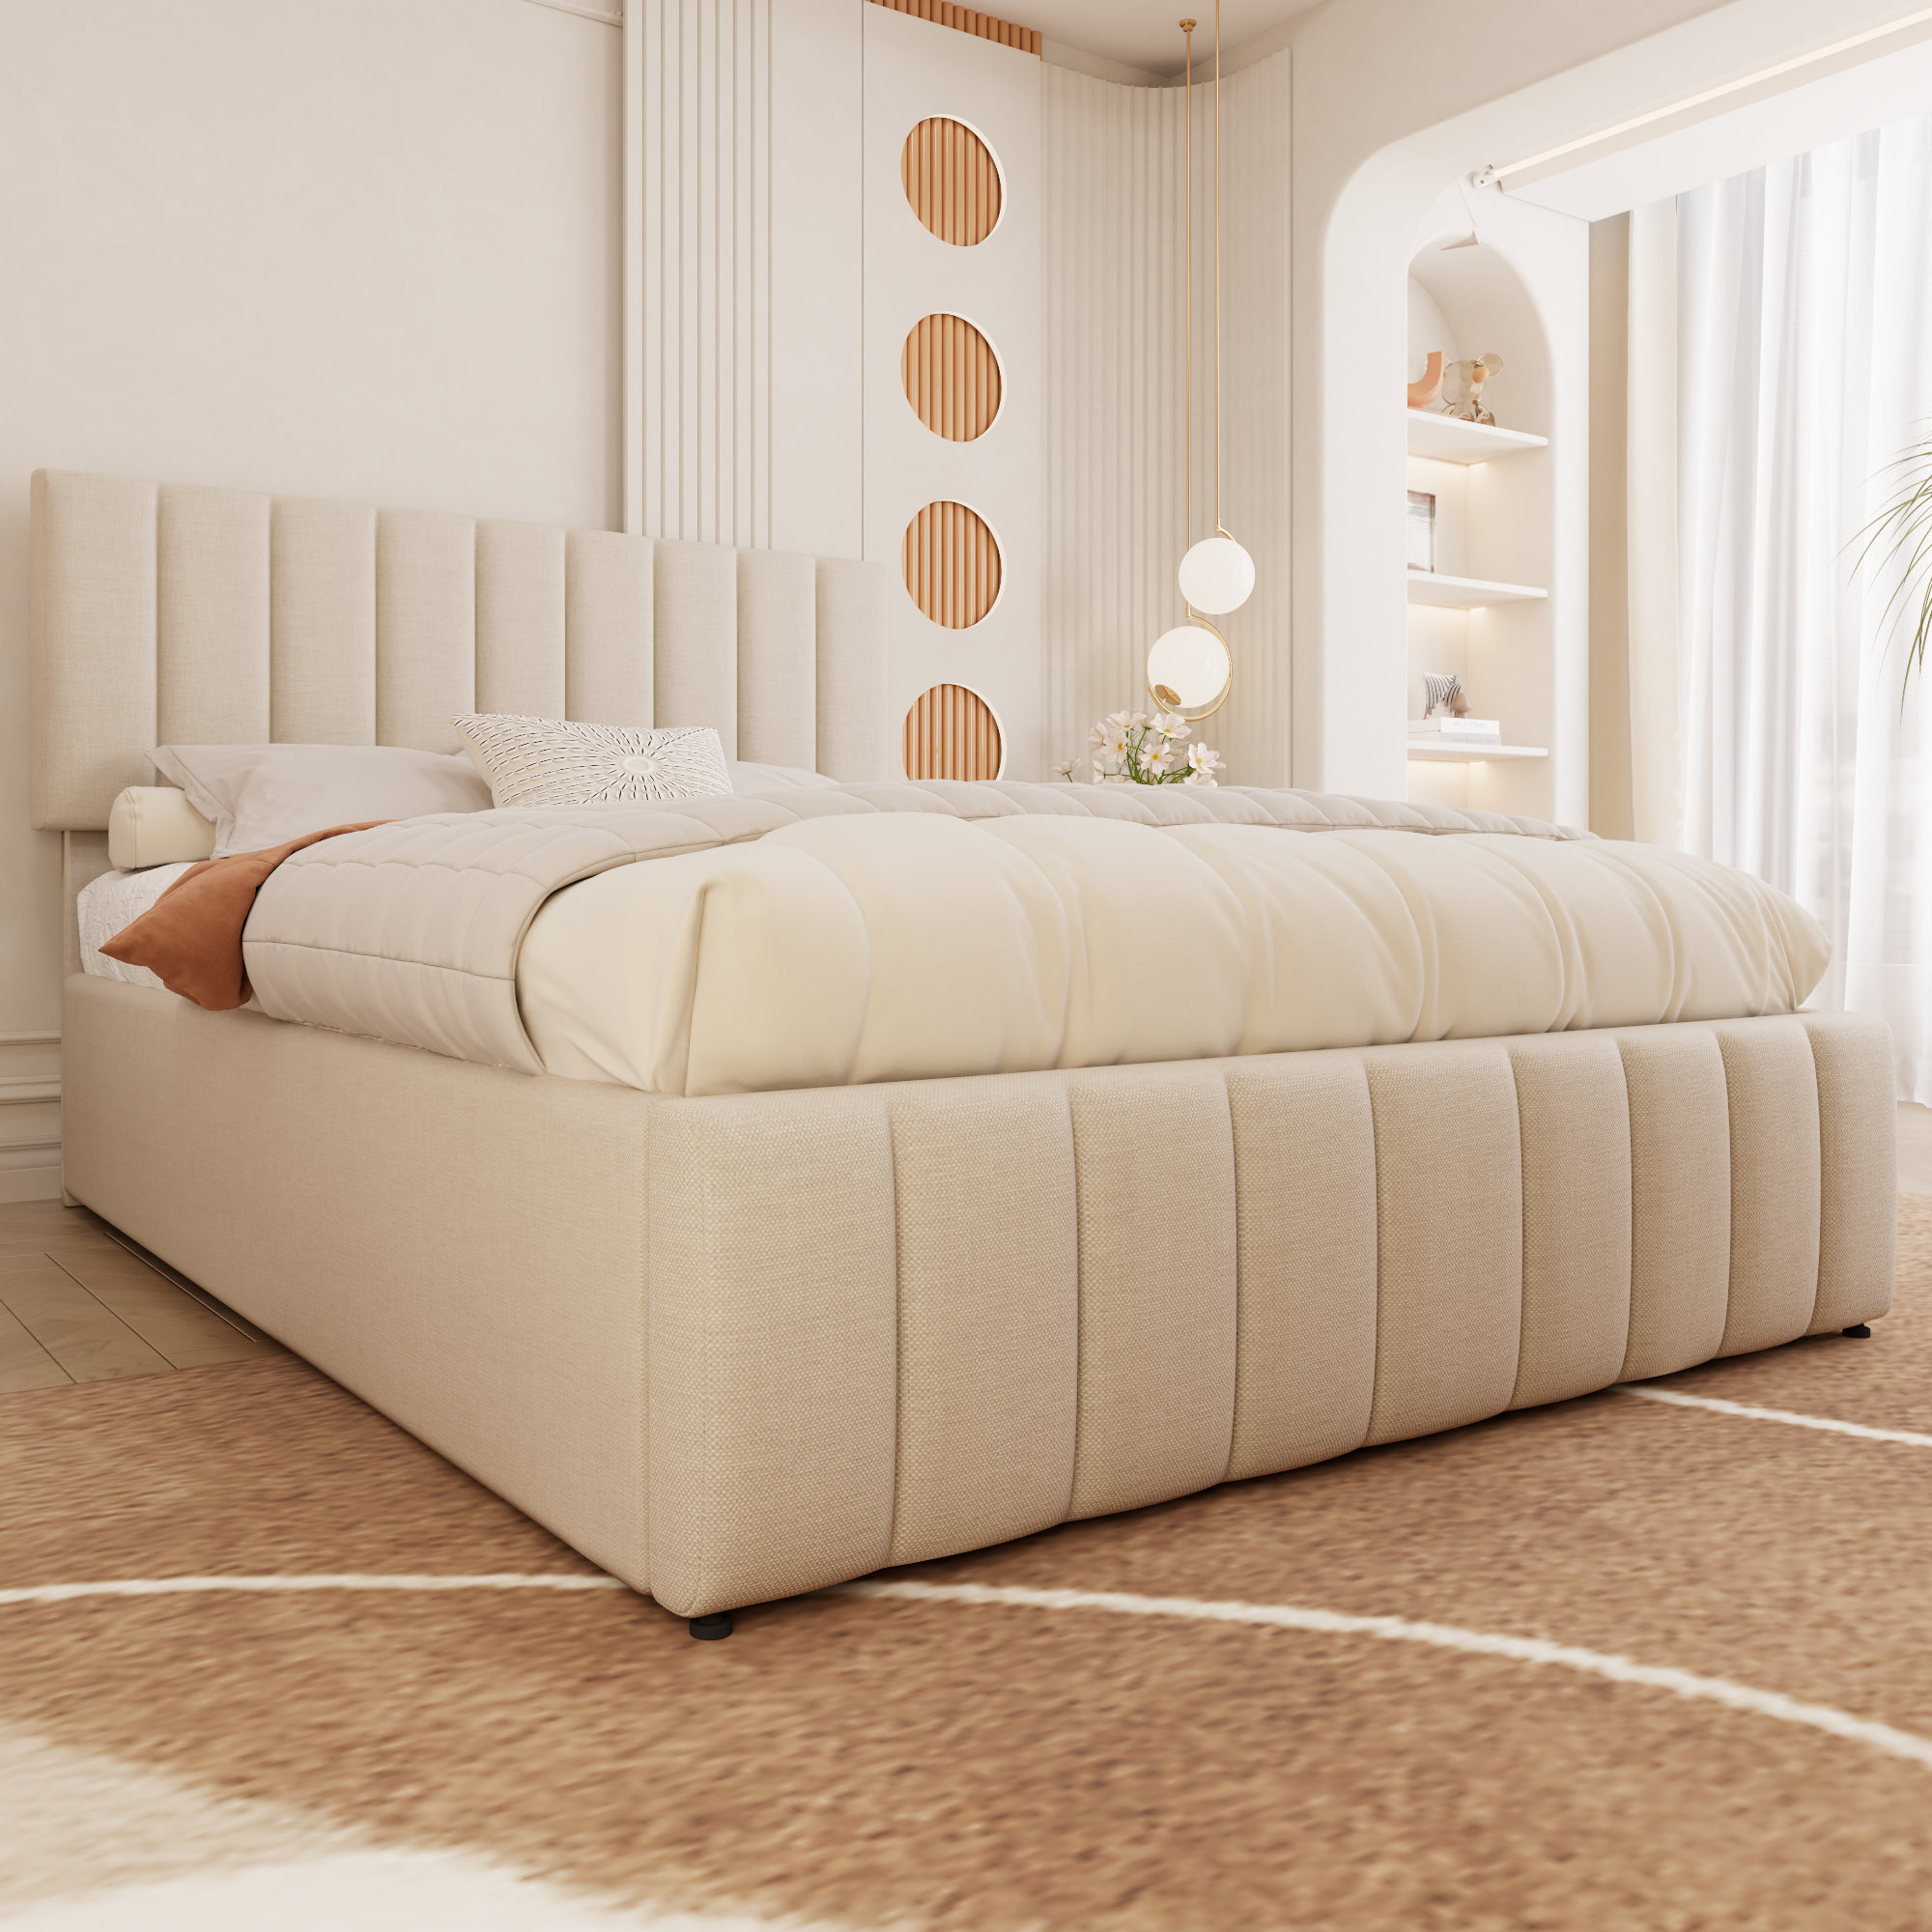 Mercer41 Juhi Upholstered Tufted Linen Platform Bed with Lift-up